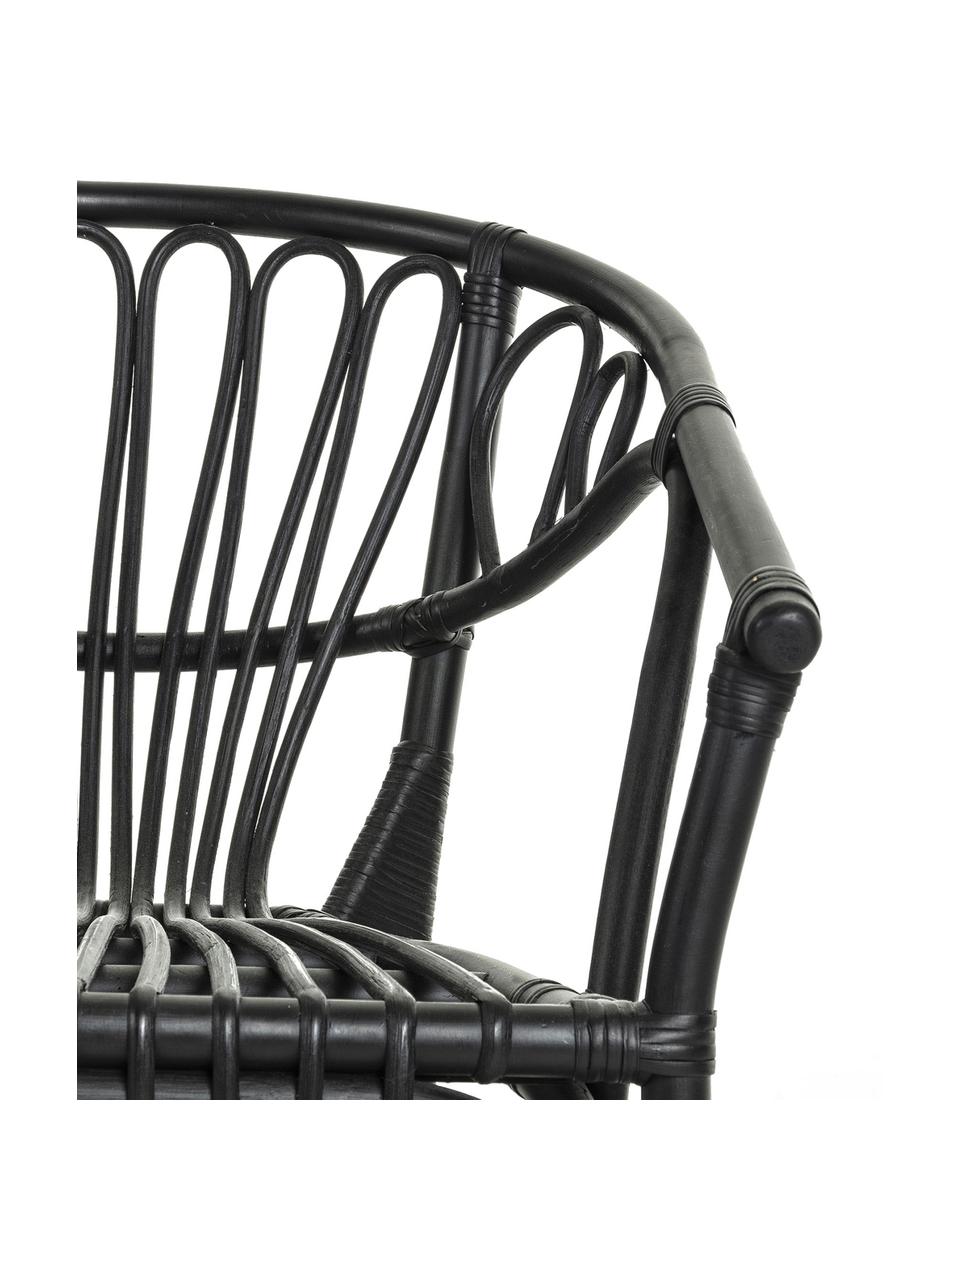 Krzesło z rattanu z podłokietnikami Ganga, Rattan lakierowany z powłoką odporną na warunki atmosferyczne, Czarny, S 56 x G 60 cm